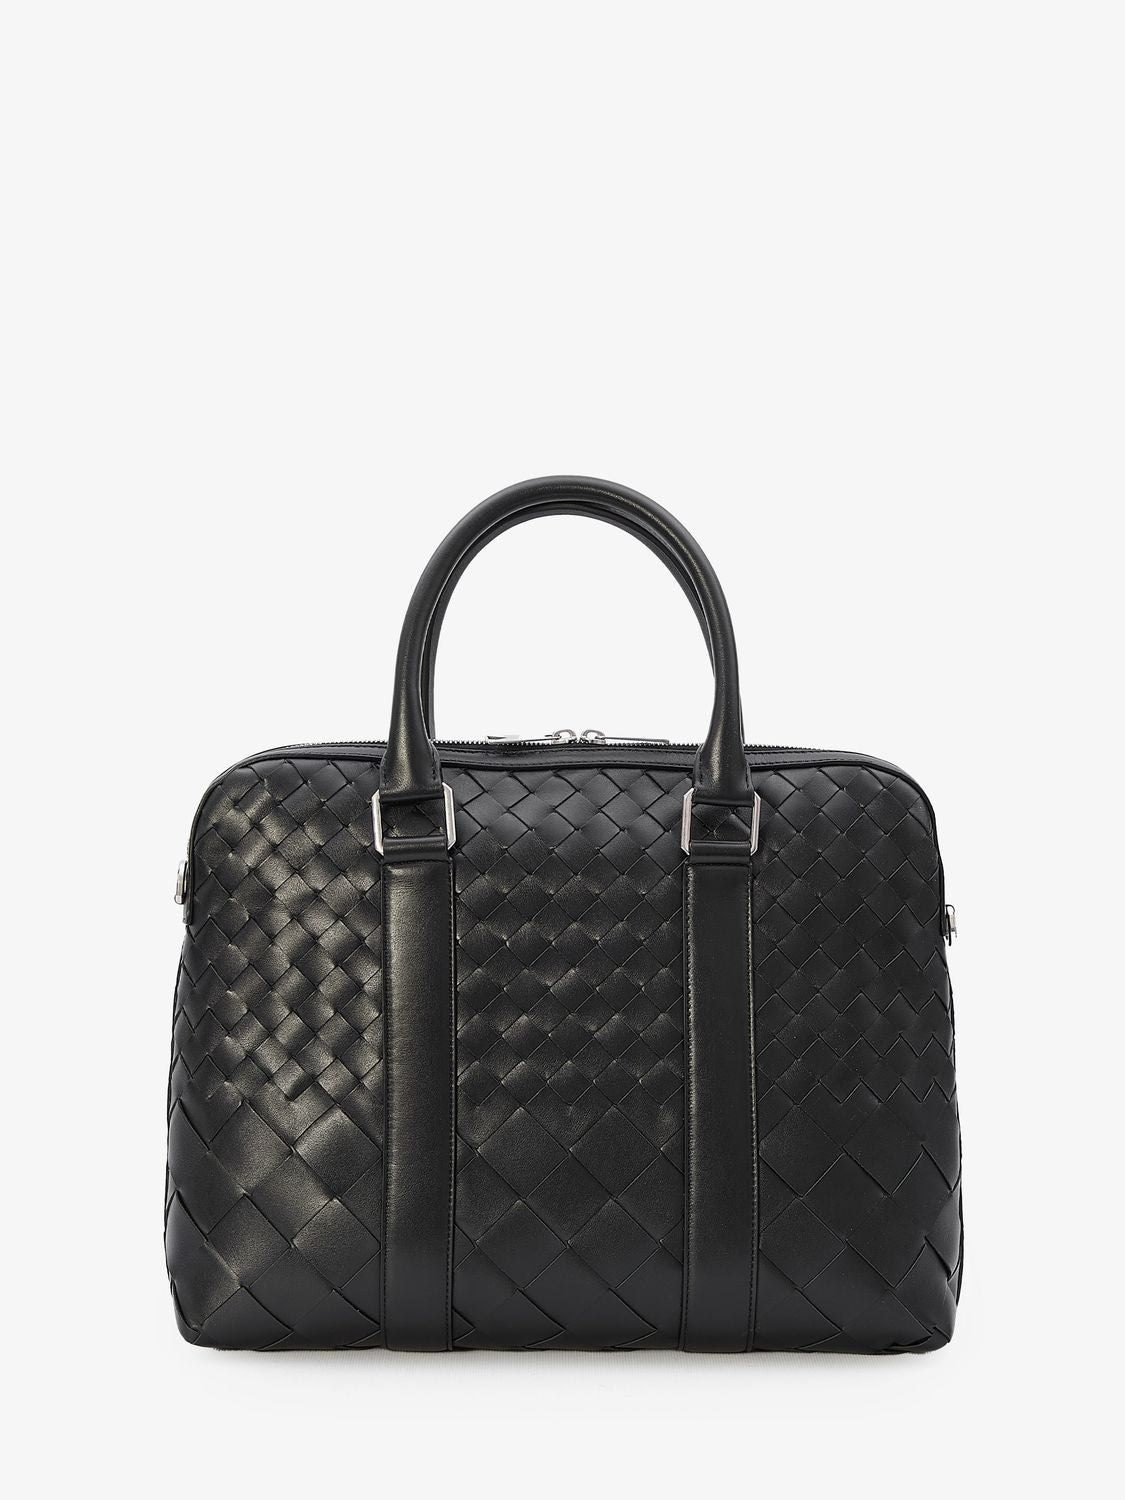 BOTTEGA VENETA Black Calfskin Intrecciato Slim Business Handbag with Detachable Strap, 28x35.5x7.5 cm - Men's